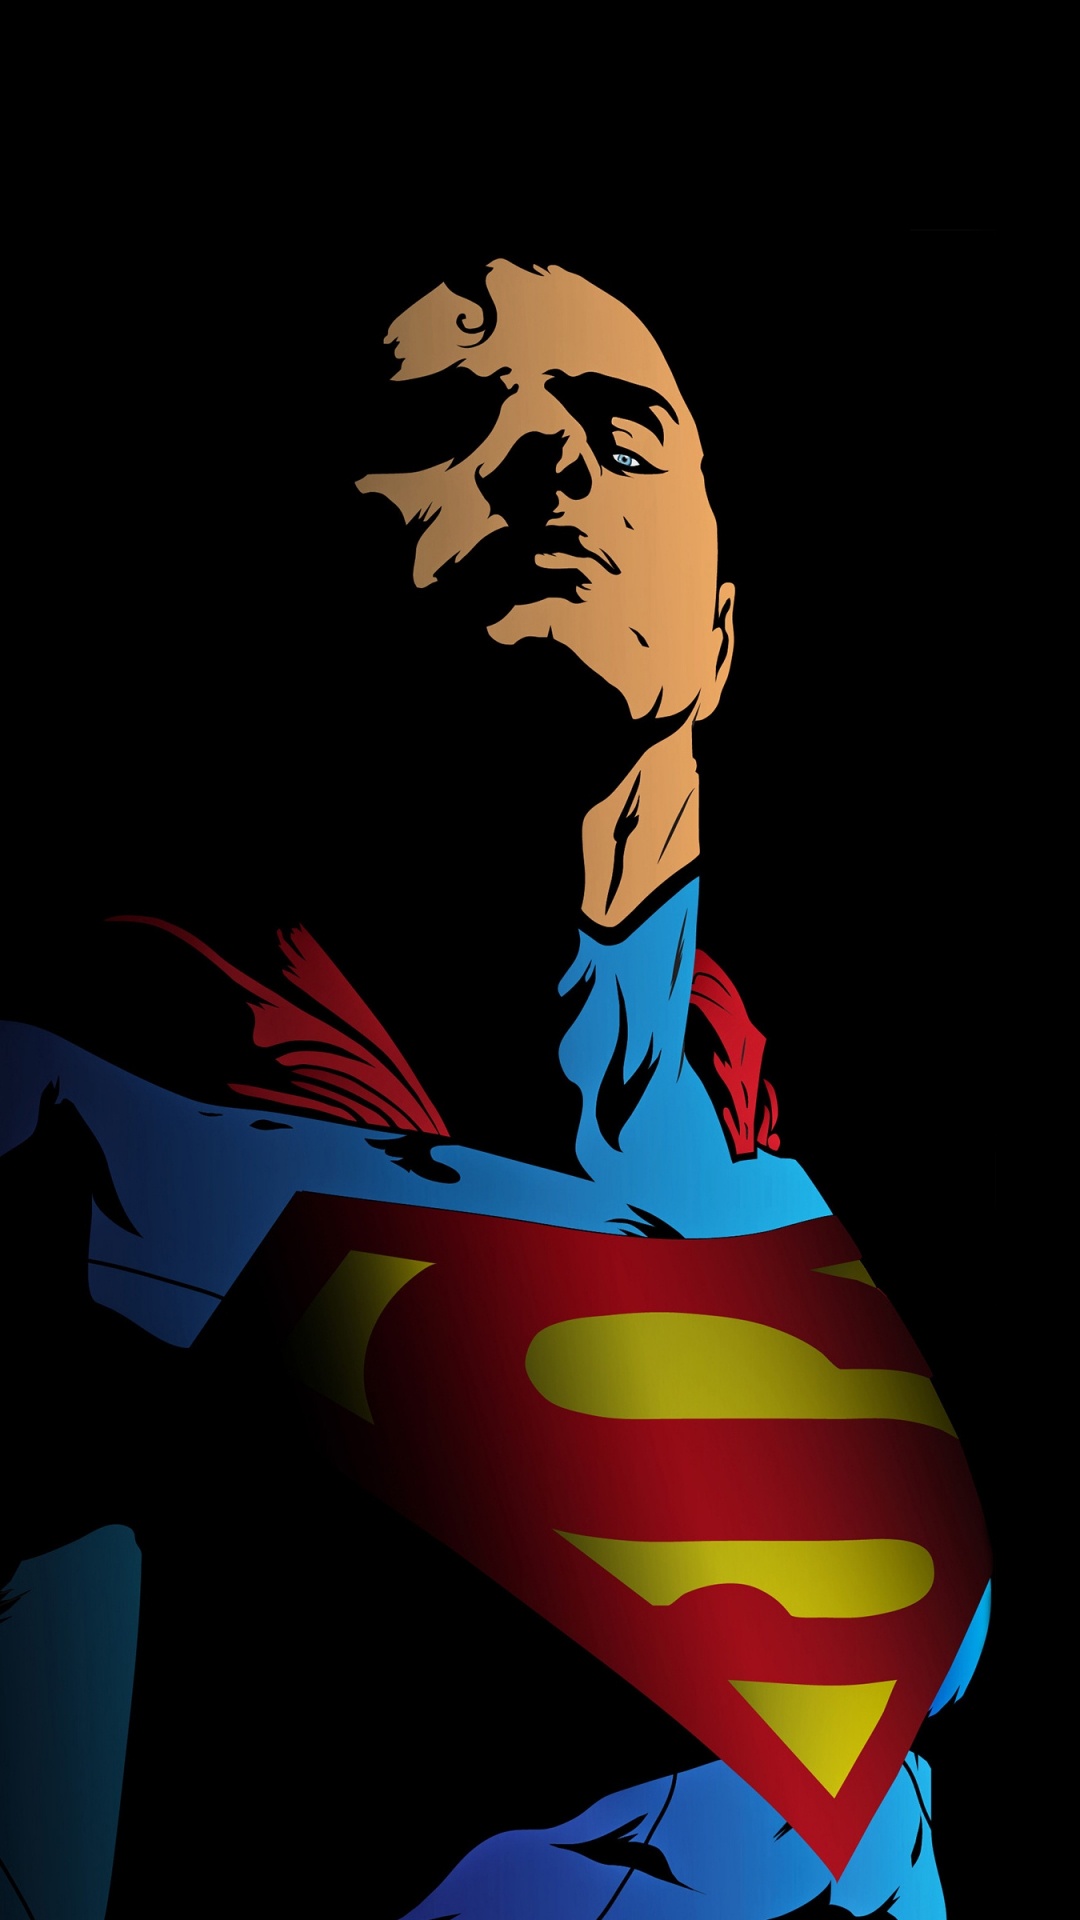 超级英雄, 艺术, 超人的标志, 虚构的人物, 创造性的艺术 壁纸 1080x1920 允许